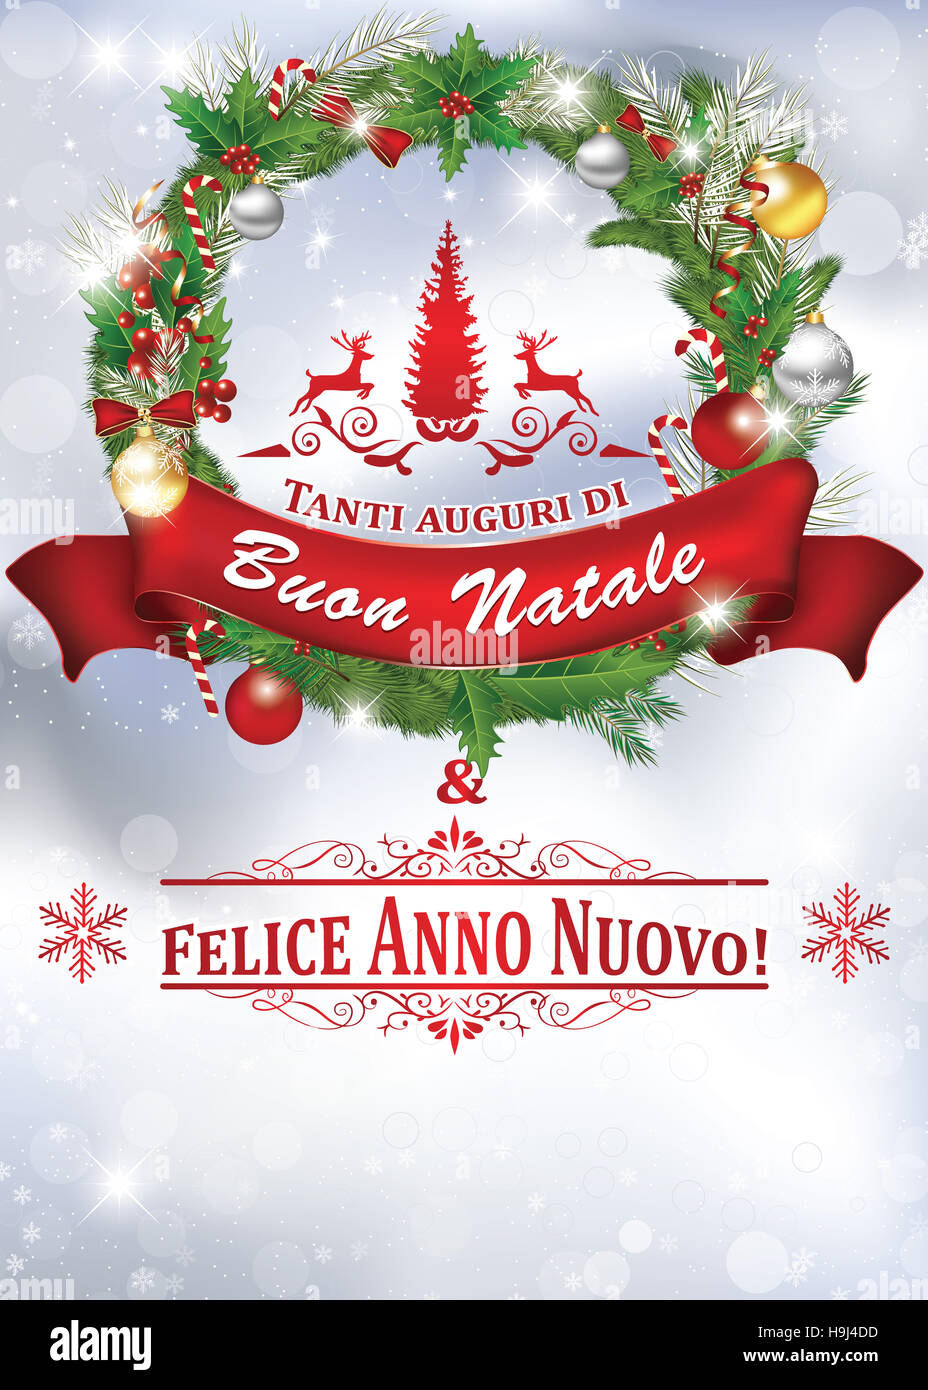 Auguri Di Buon Natale E Felice Anno Nuovo.Tanti Auguri Di Buon Natale Felice Anno Nuovo Biglietto Stock Photo Alamy